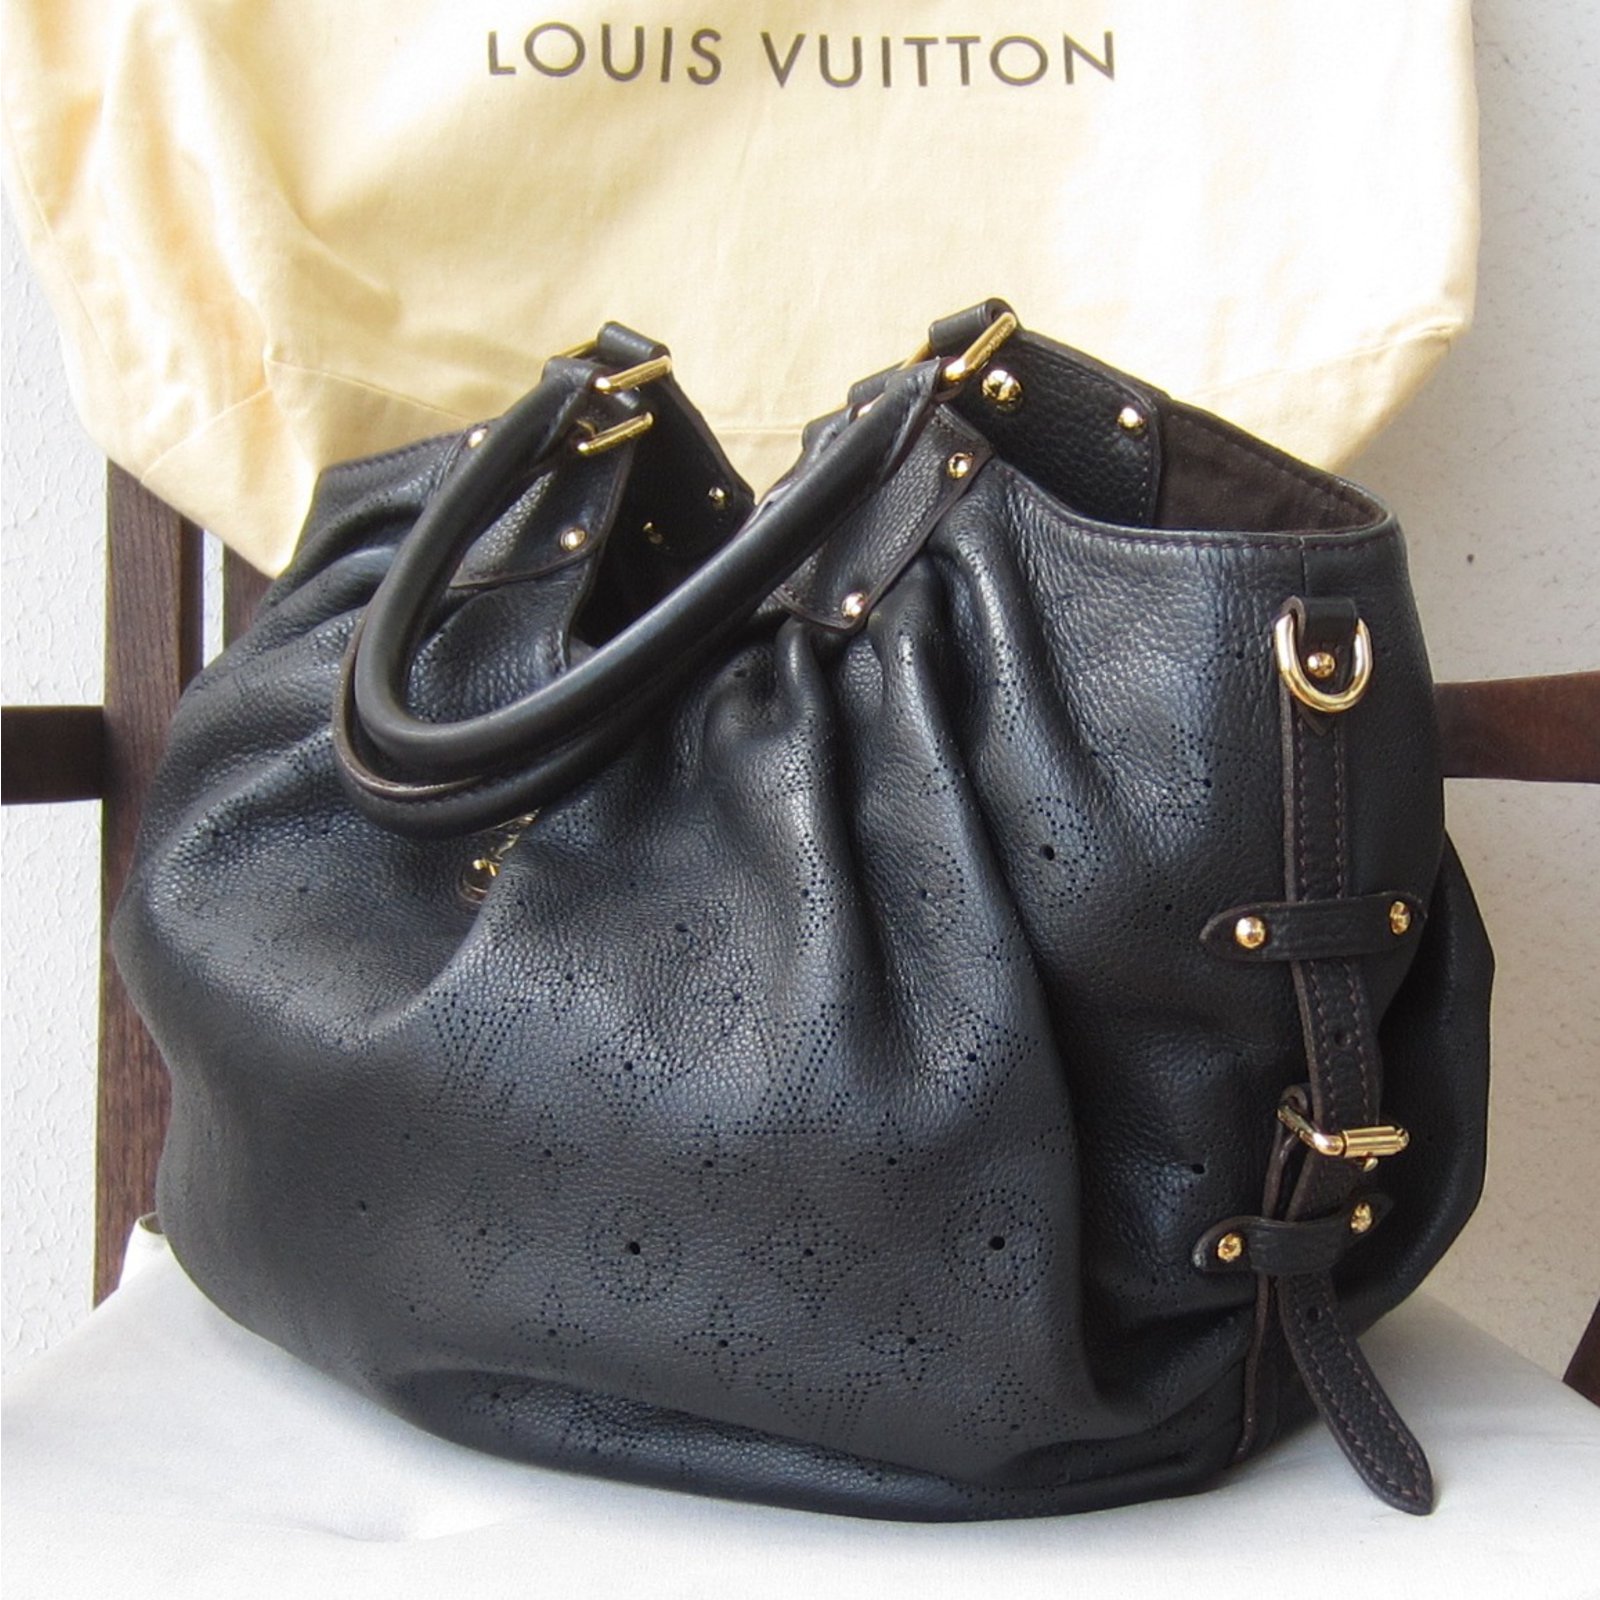 Mairie-ascainShops - Bolso de mano Louis Vuitton L en cuero mahina negro